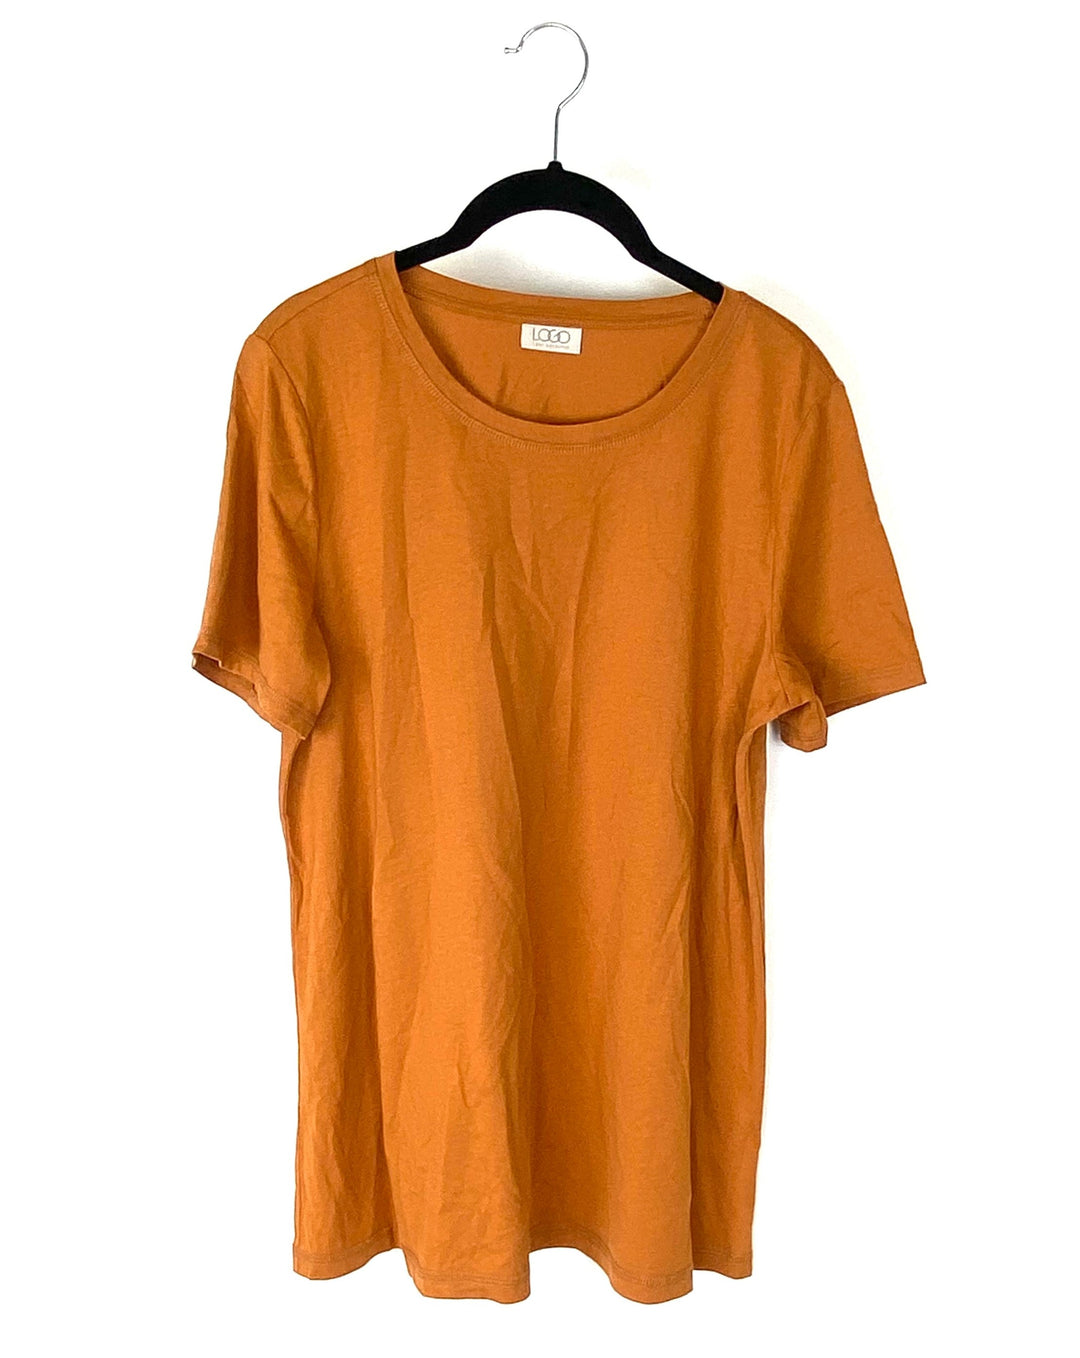 Apricot T-Shirt- Small